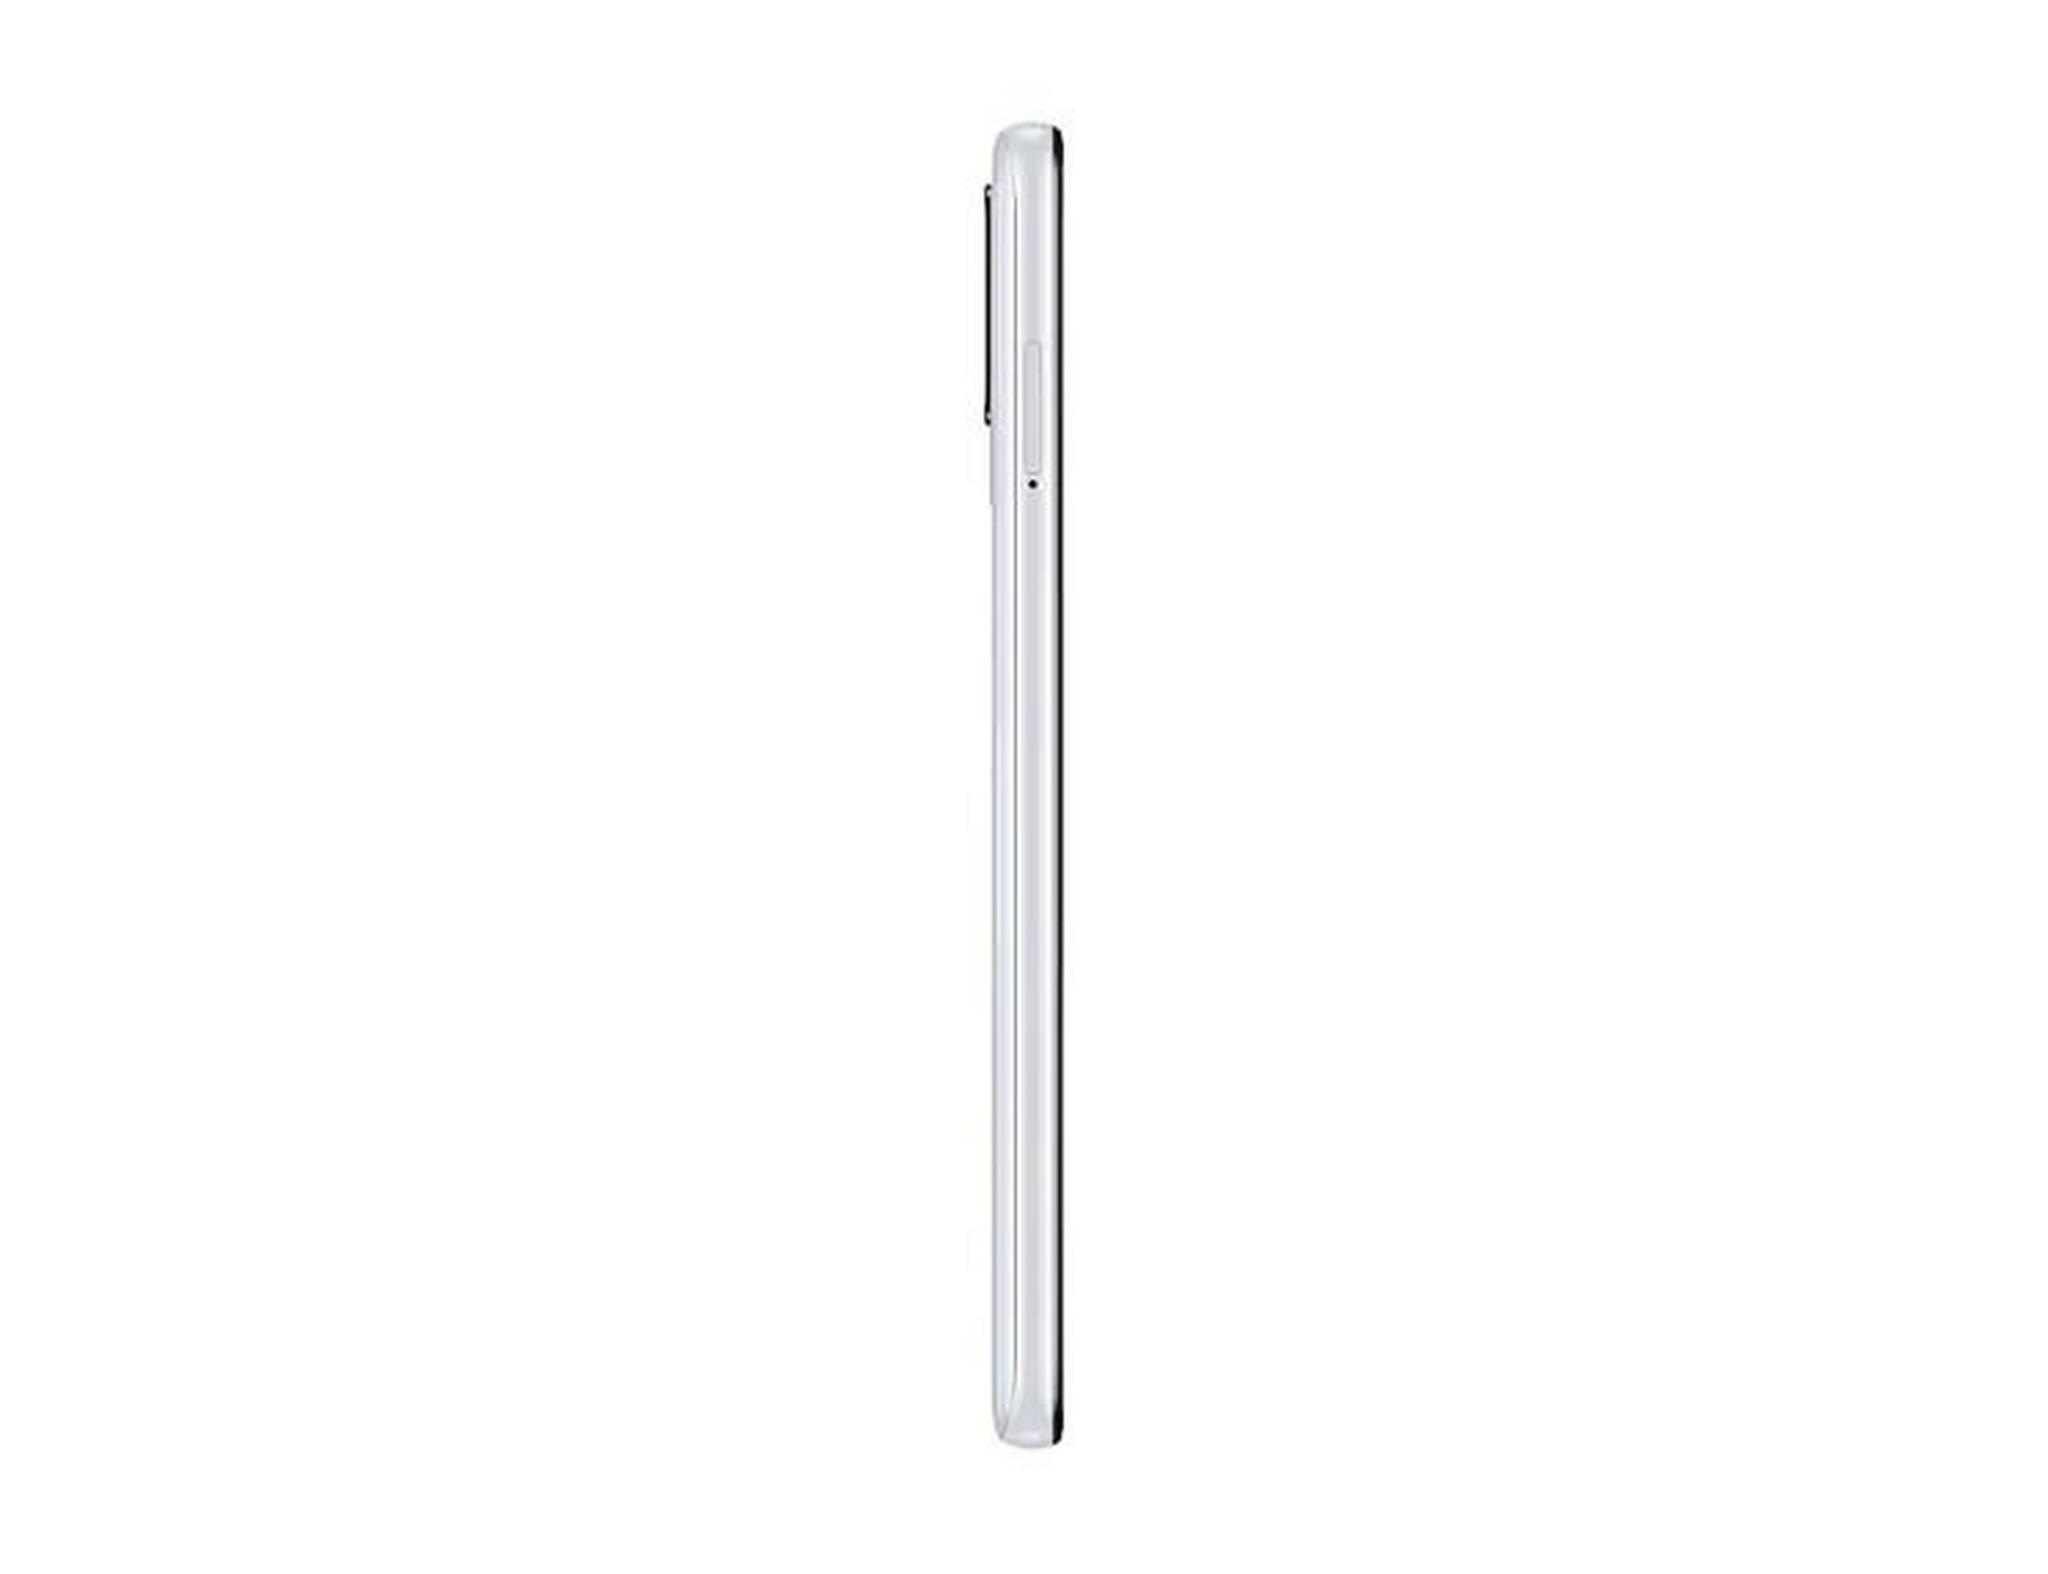 Samsung Galaxy A21s 64GB Phone - White